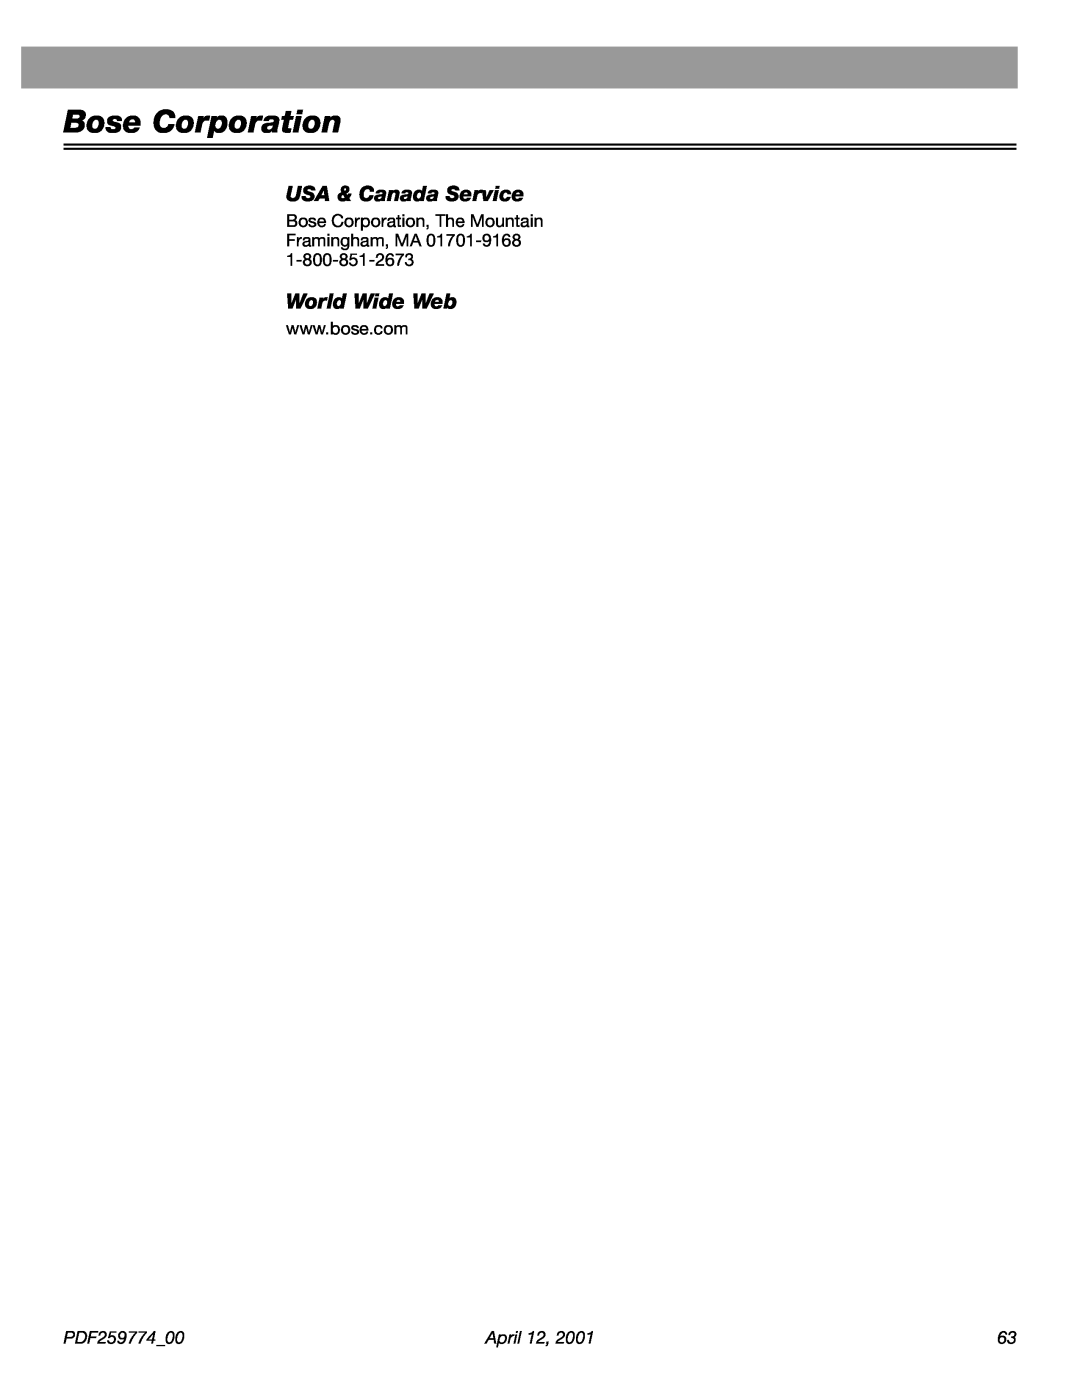 Bose PDF259774_00 manual USA & Canada Service, World Wide Web, Bose Corporation 